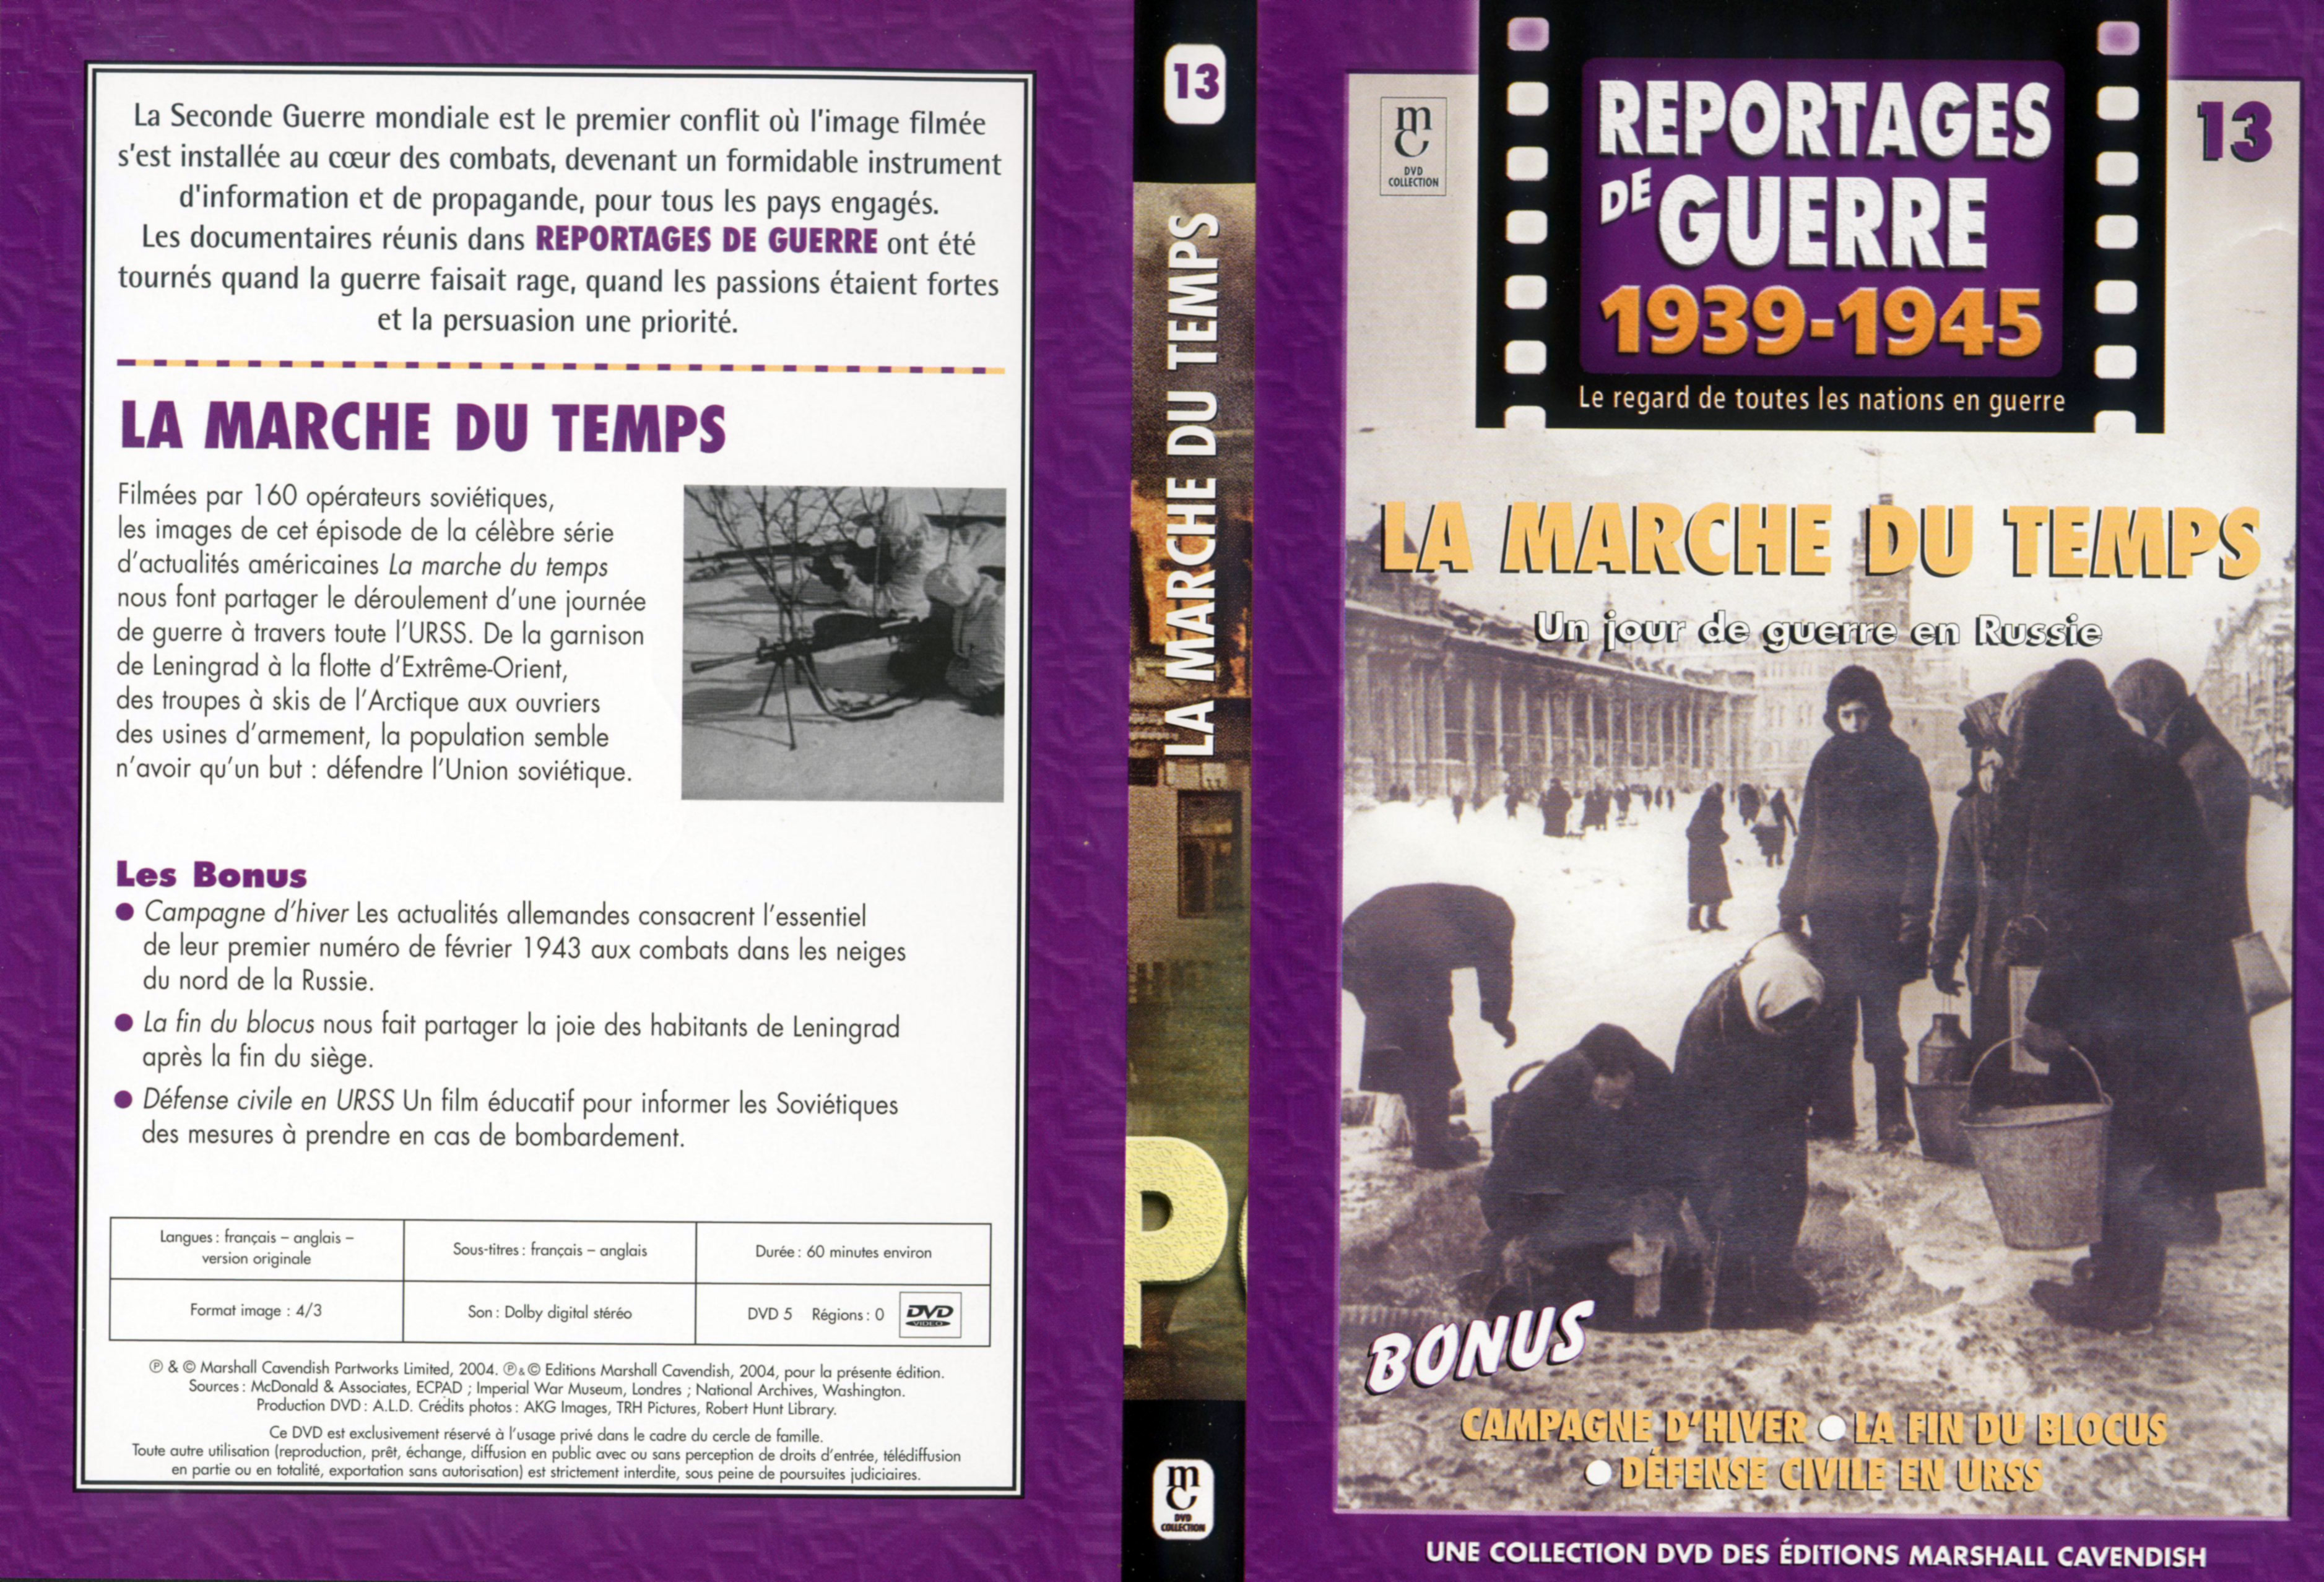 Jaquette DVD Reportages de guerre vol 13